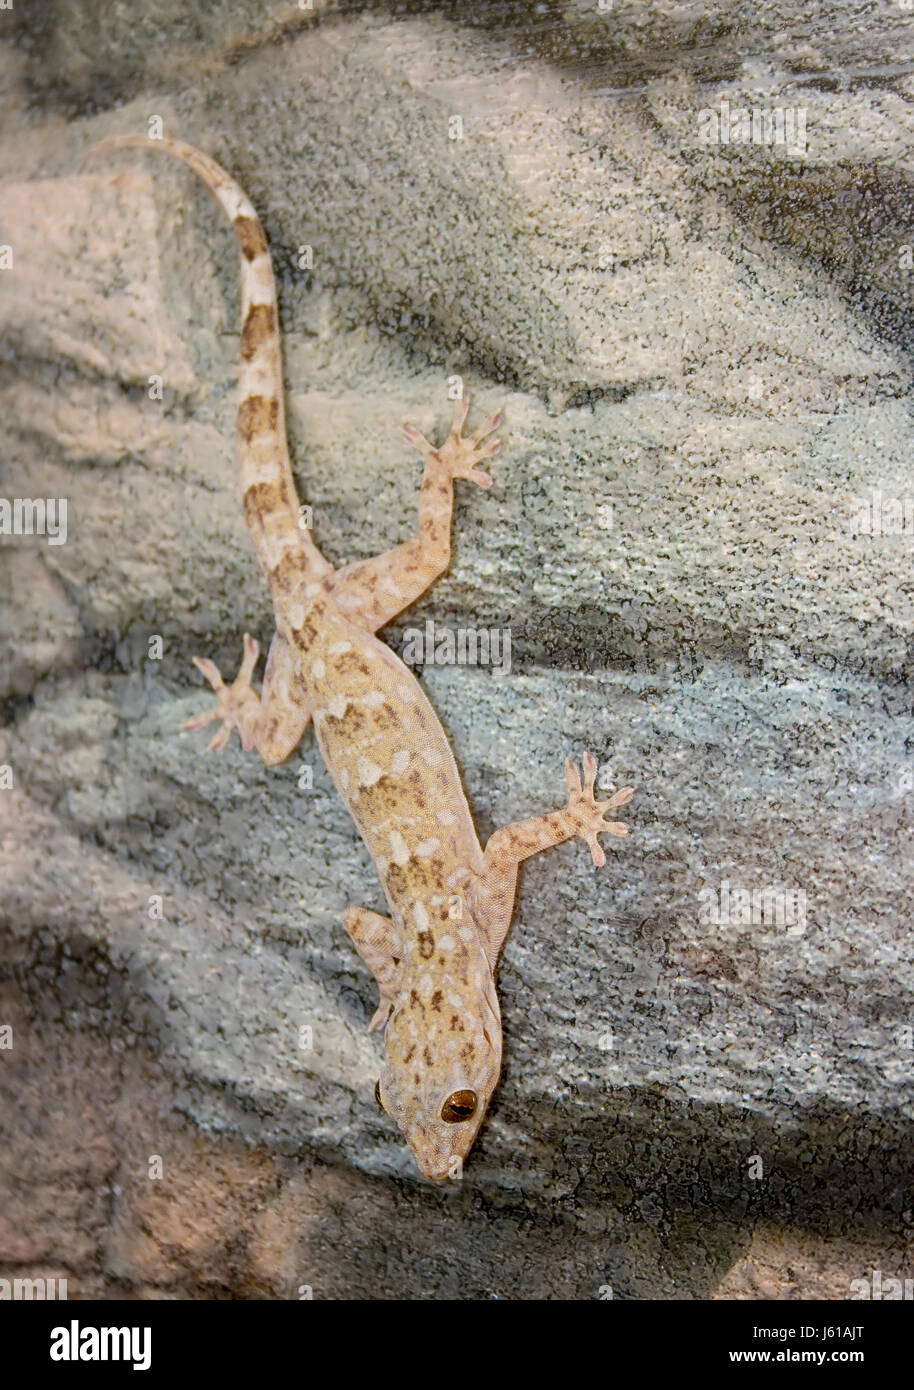 Mascota reptil gecko terrario headlong deporte ejecutar ejecuta Foto de stock